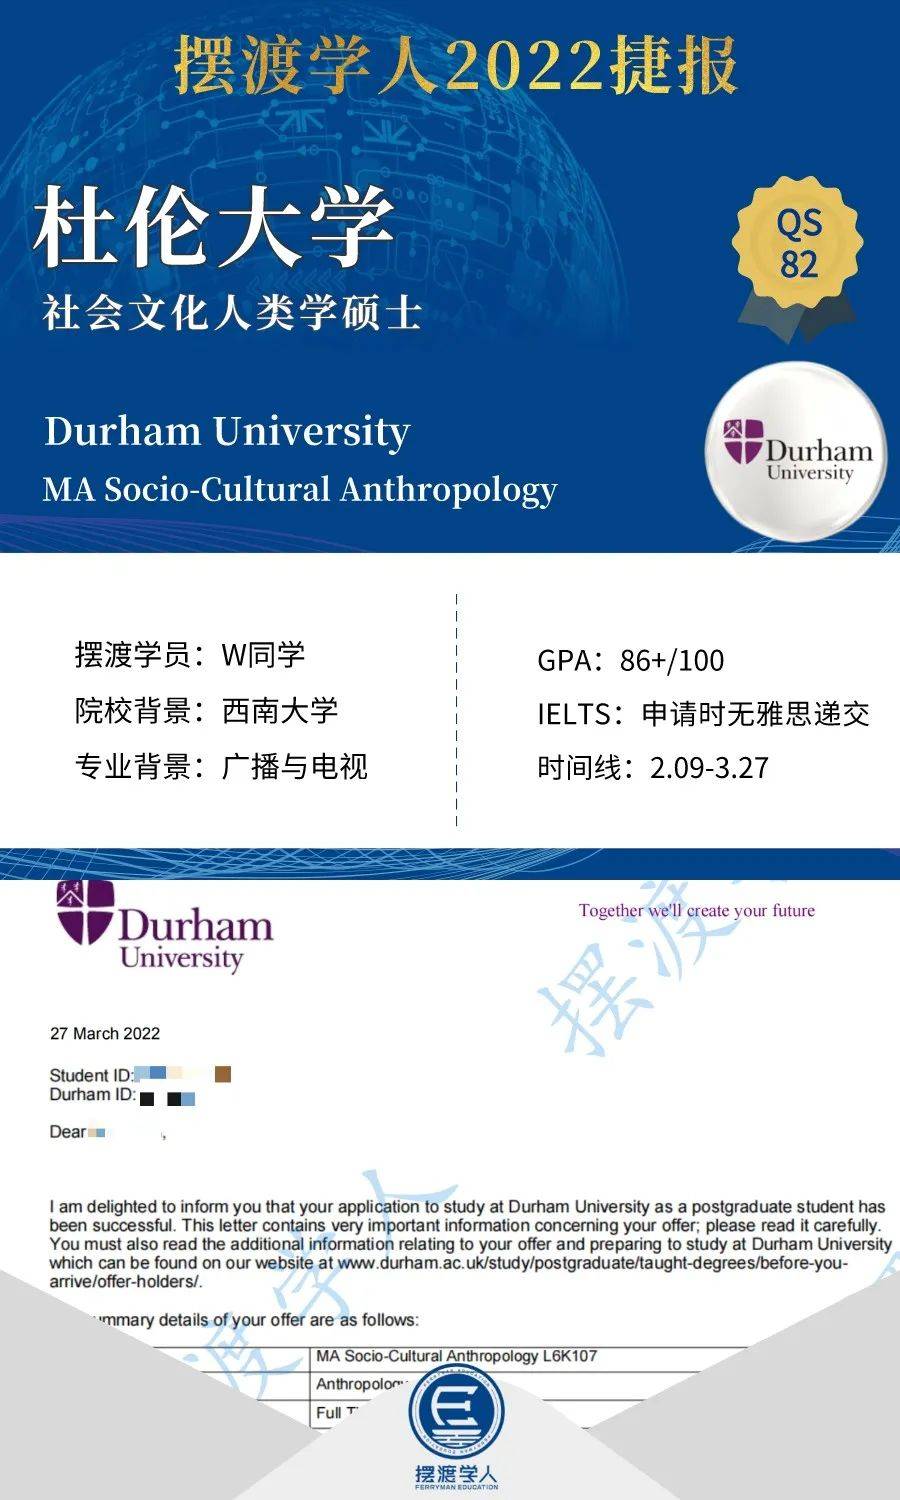 录取捷报 | 杜伦大学社会文化人类学硕士MA Socio-Cultural Anthropology